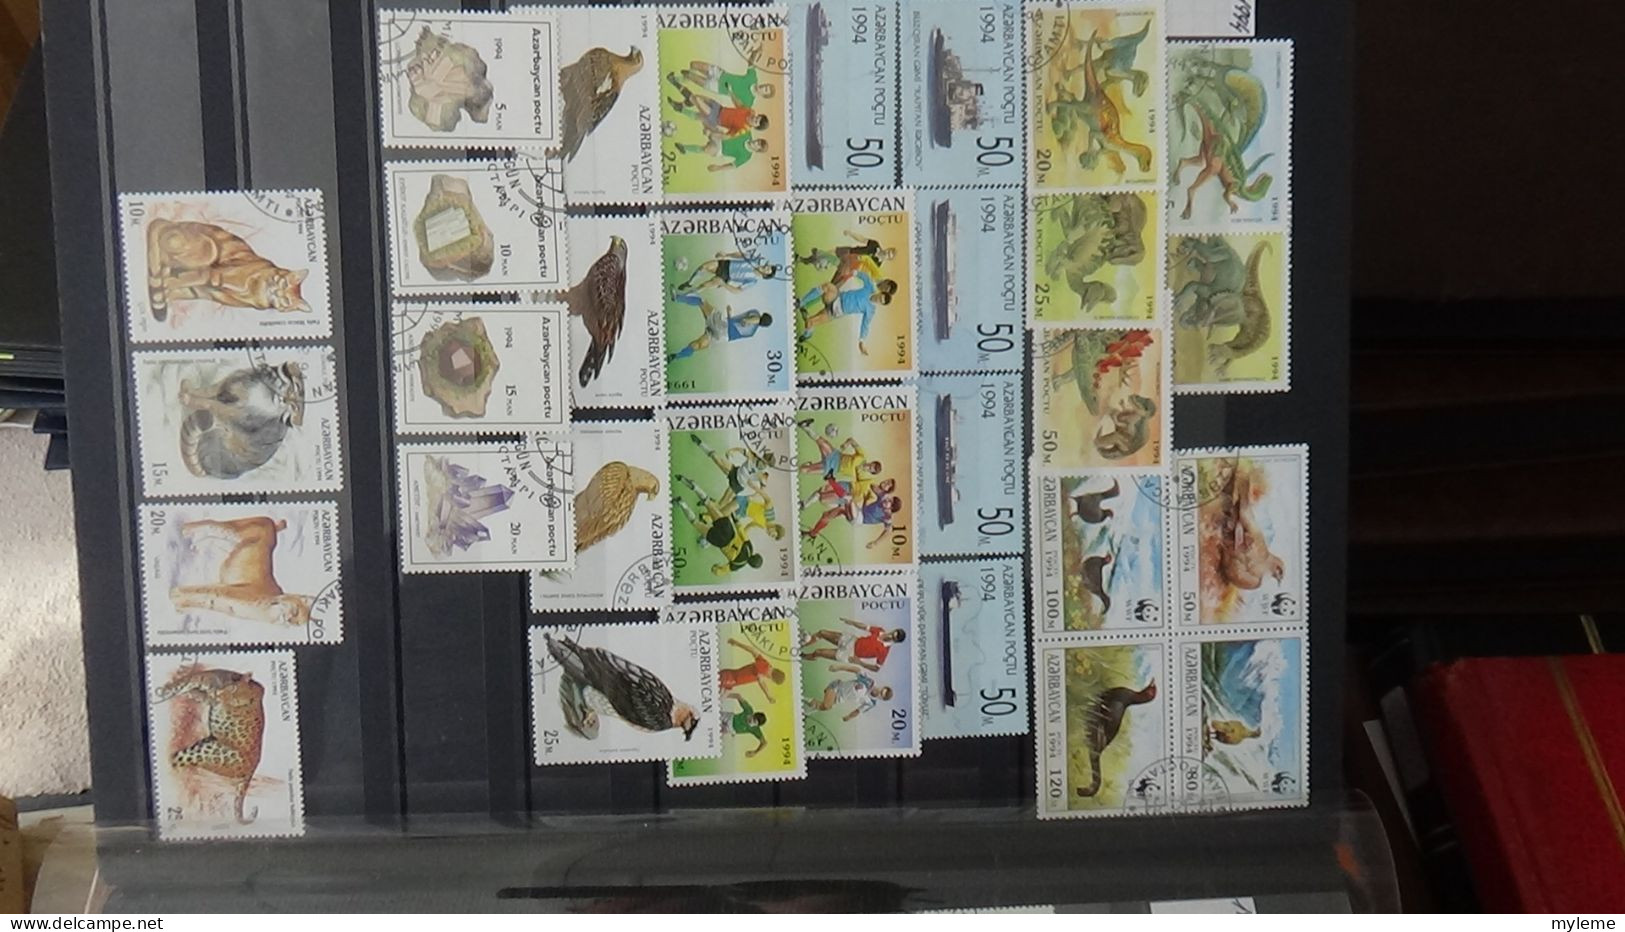 BF28 Ensemble de timbres de divers pays + Mouchon N° 127 **. Cote 525 euros